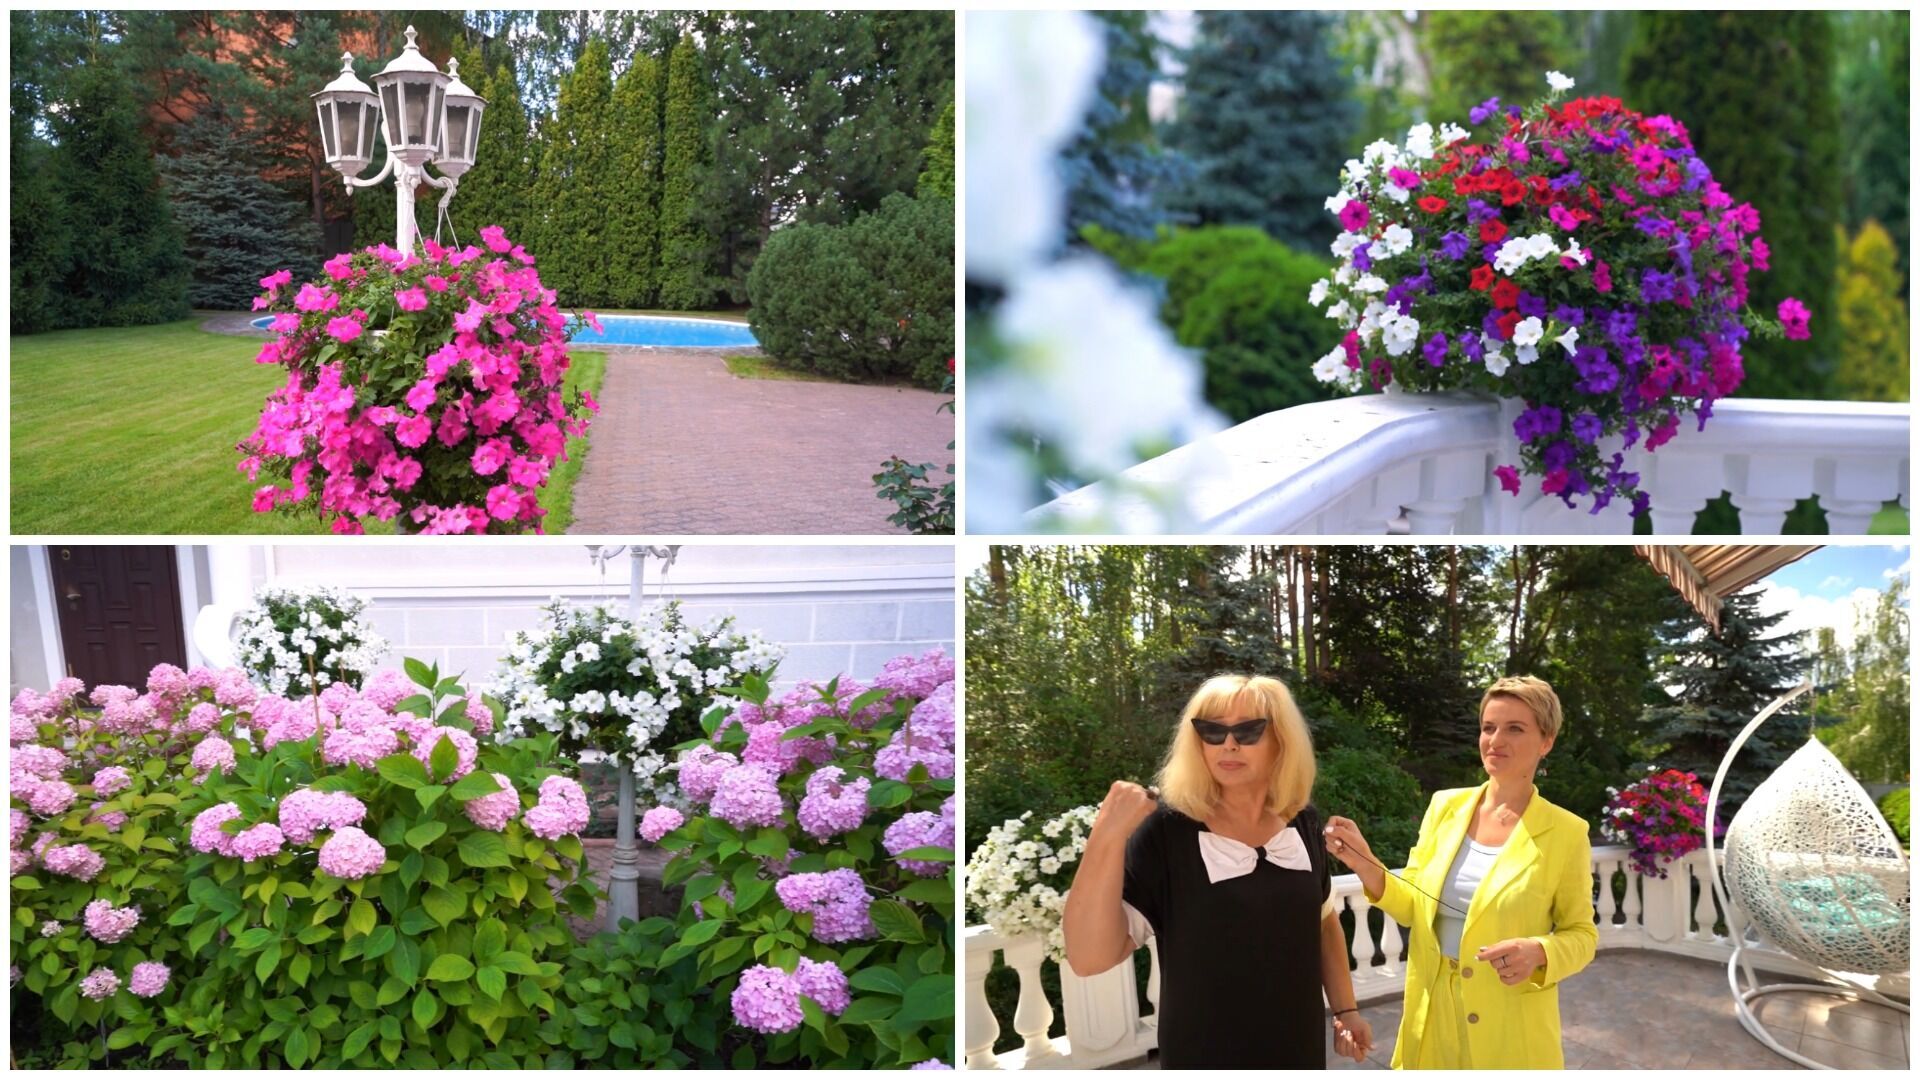 Павел Зибров показал свое роскошное имение под Киевом площадью 1 га. Фото и видео